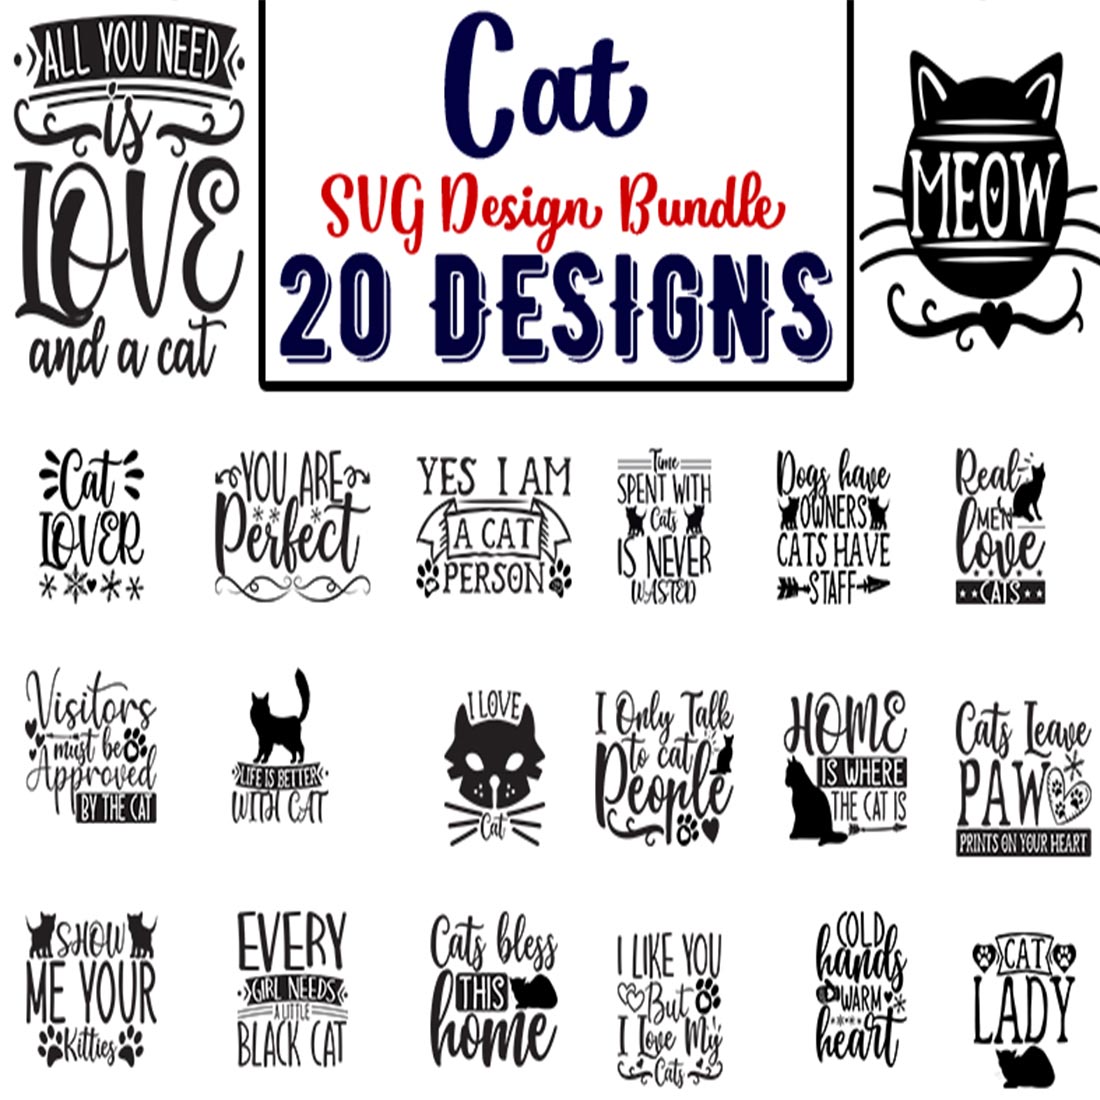 Set of 20 designs for a cat svt design bundle.